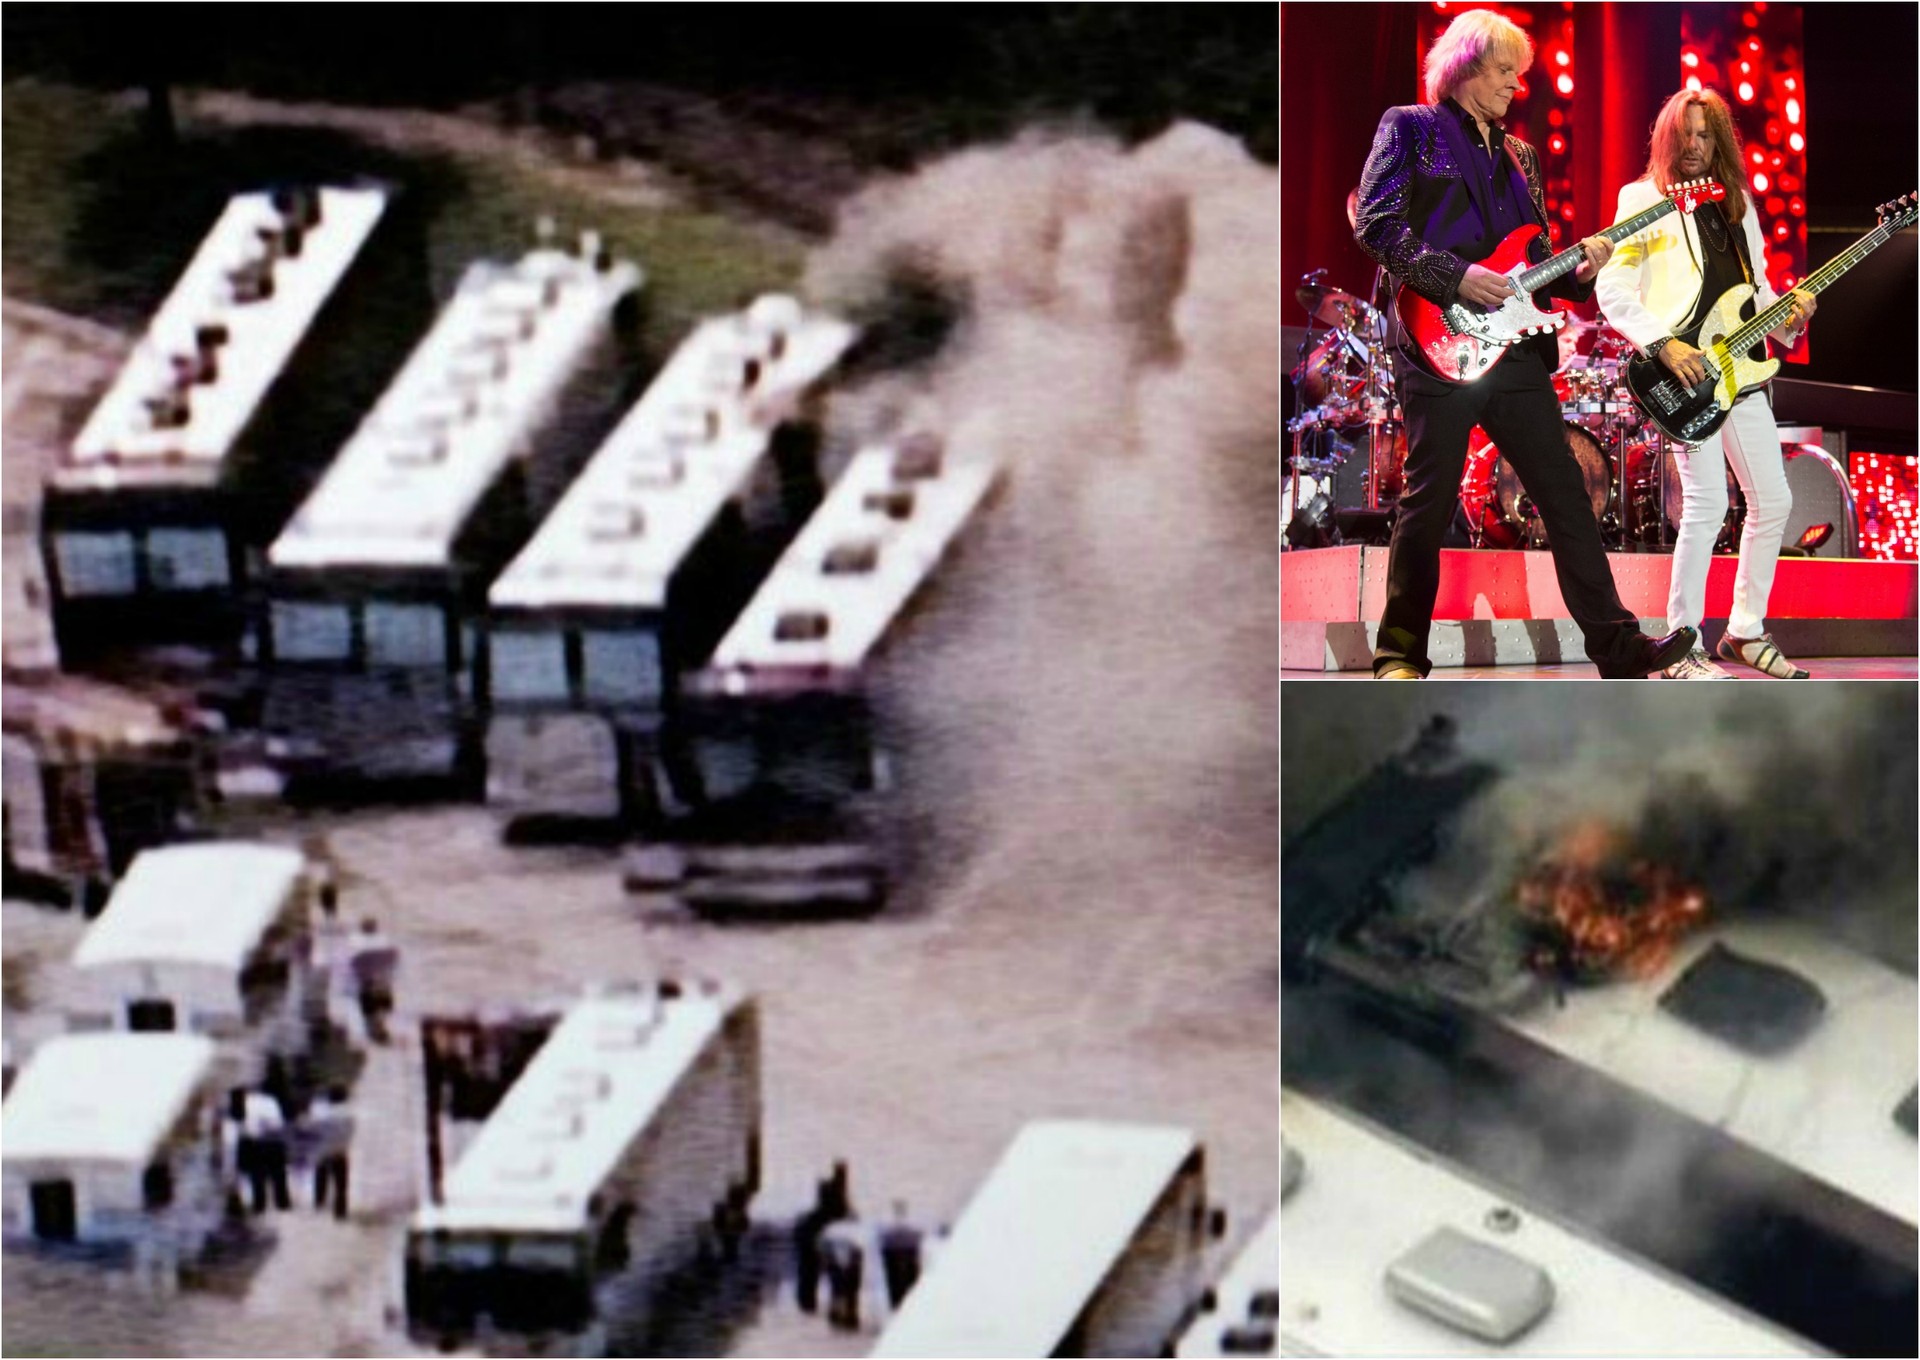 Ônibus incendiados e apresentação do grupo Styx na semana passada. (Foto: Twitter e Getty Images)